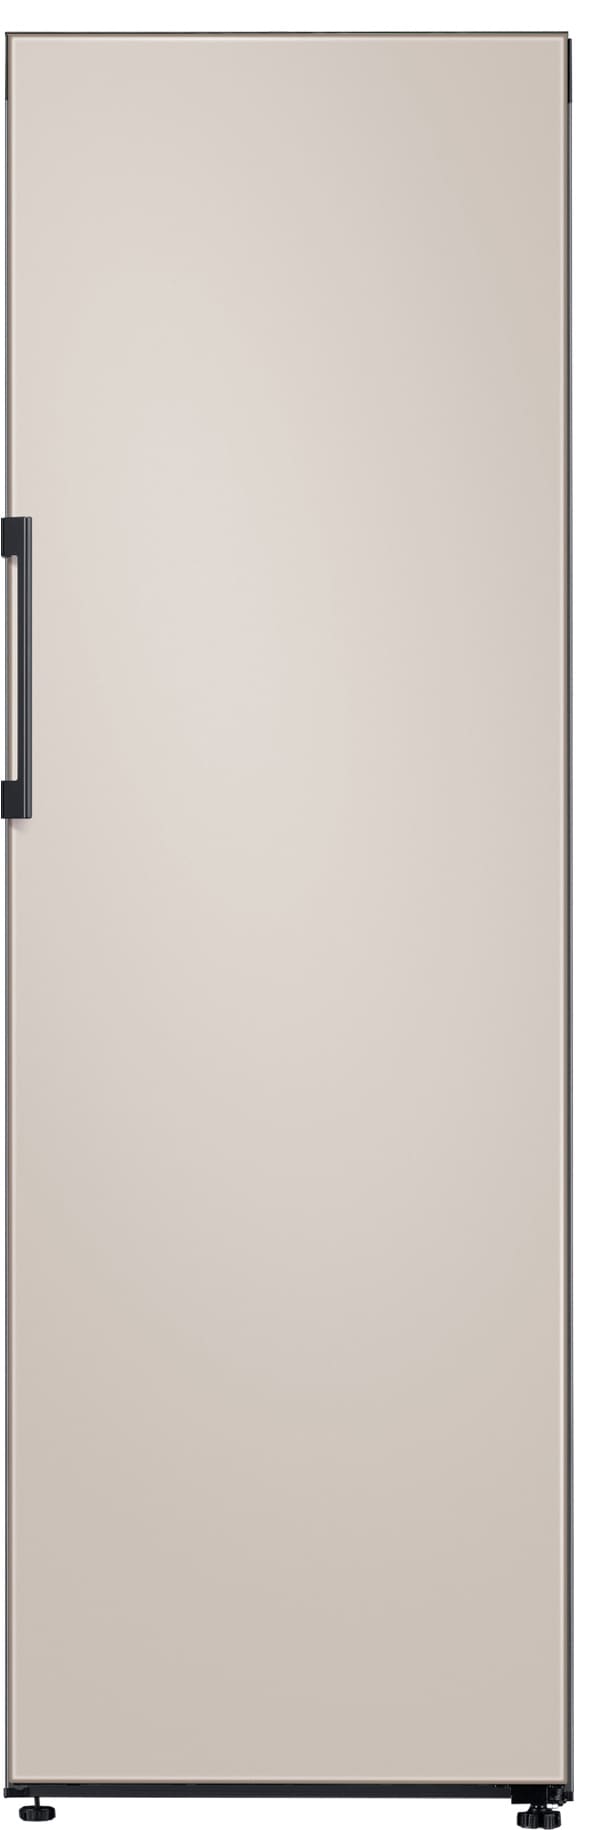 Samsung køleskab RR39T746339/EF thumbnail